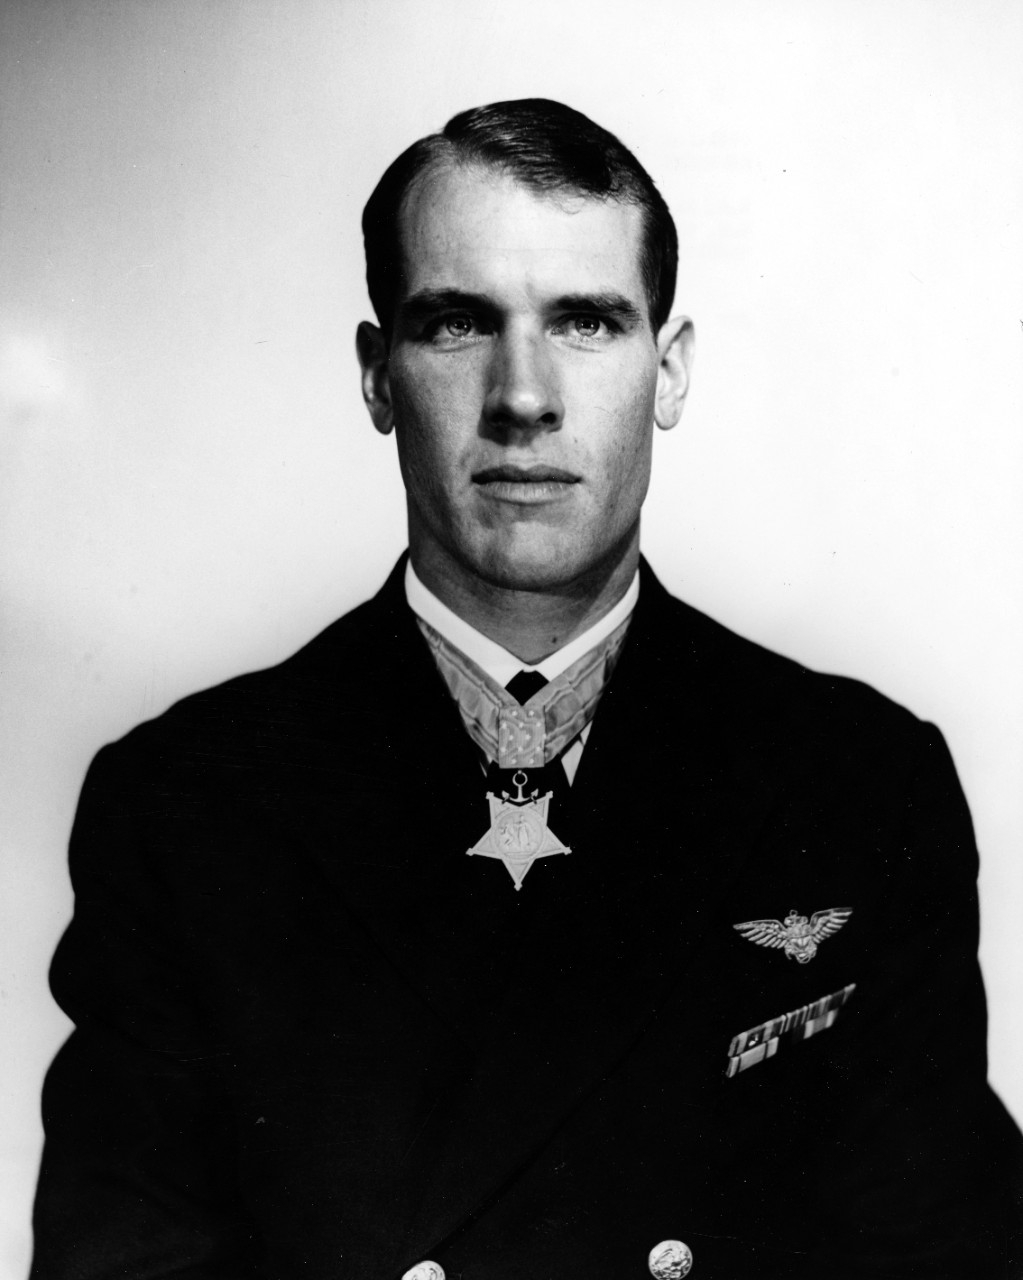 Medal of Honor recipient Thomas J. Hudner, Jr.